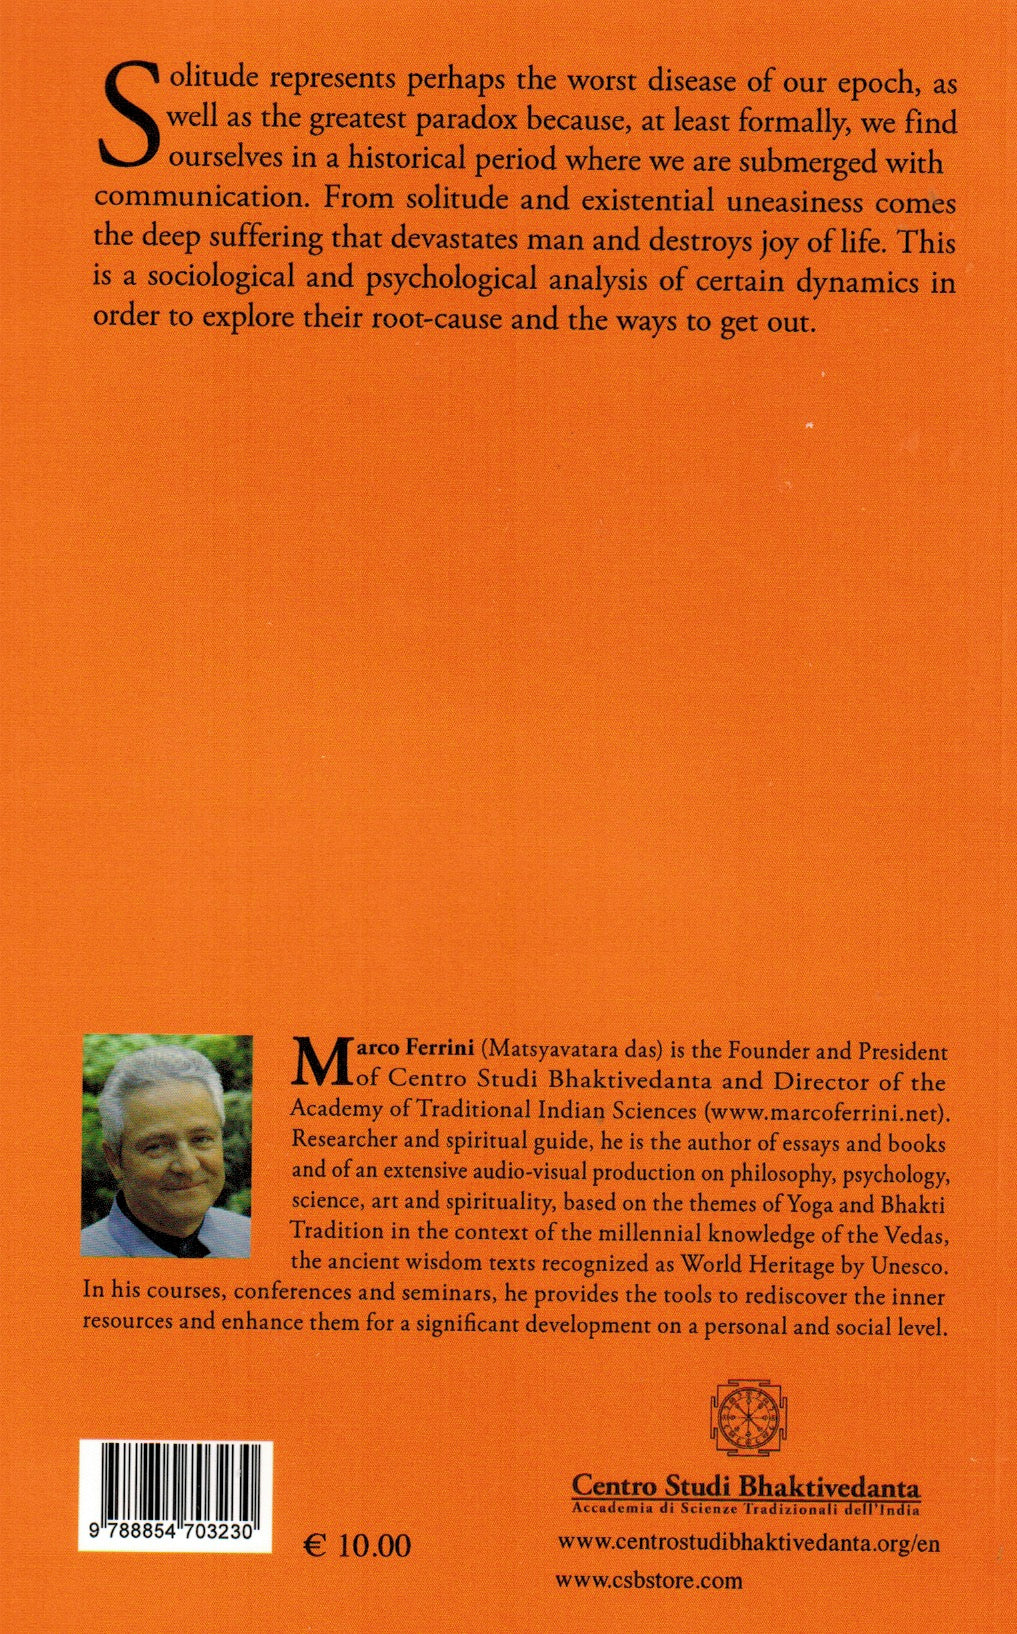 MARCO FERRINI (HG Matsyavatara Prabhu): 'Freedom from Solitude and Suffering' - Book